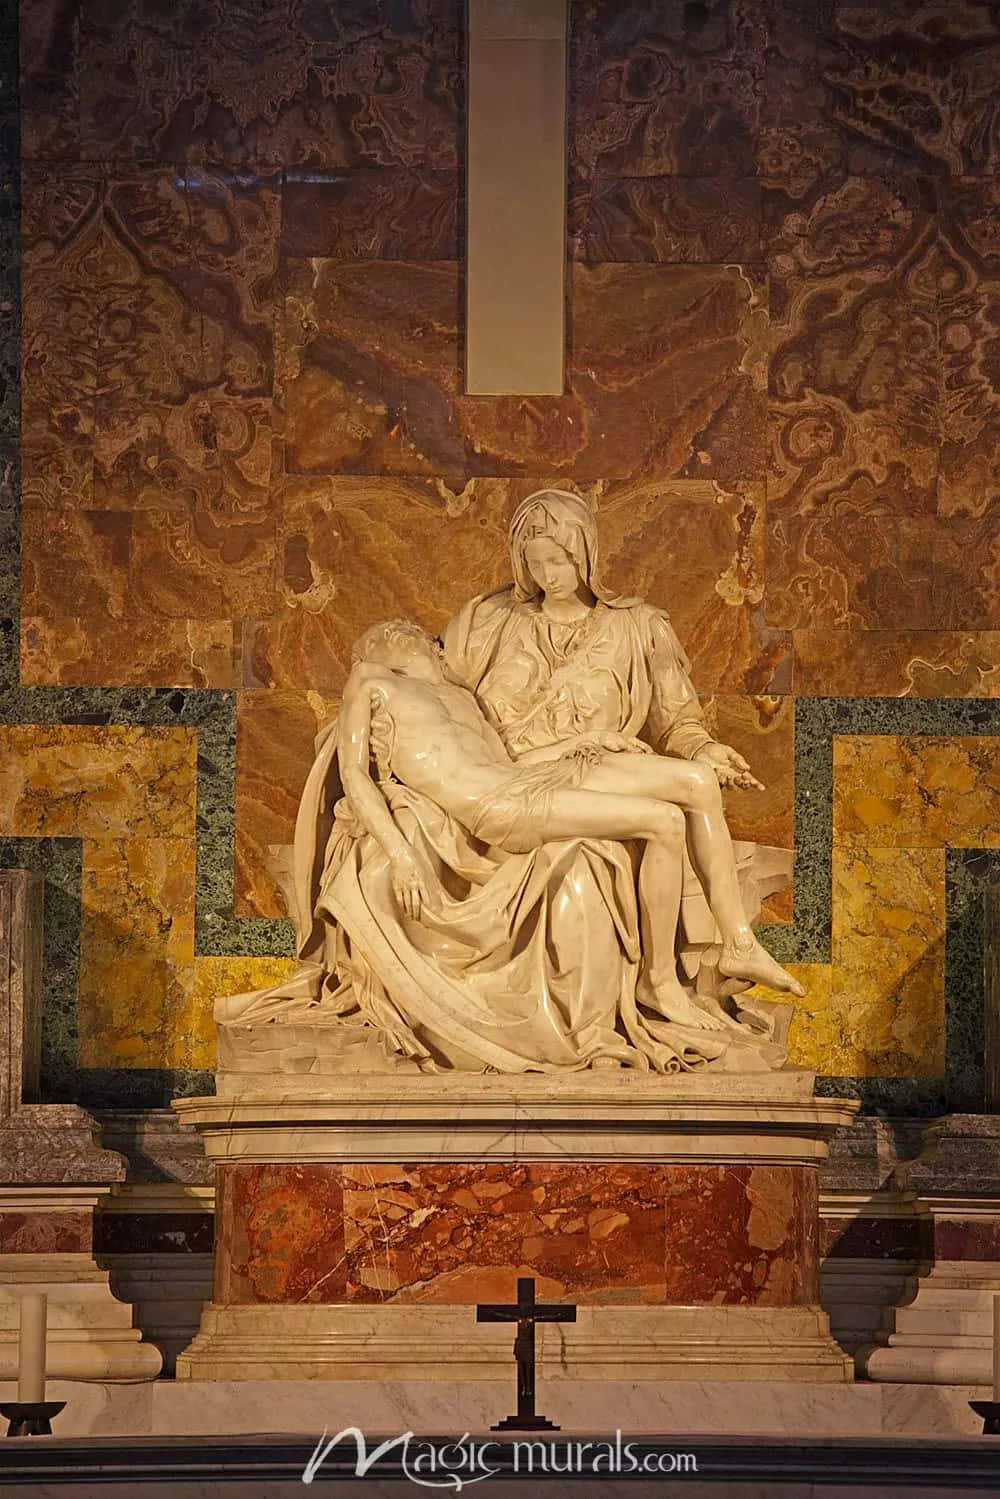 Michelangelohämtar Inspiration Från Sixtinska Kapellets Takmålning. Wallpaper